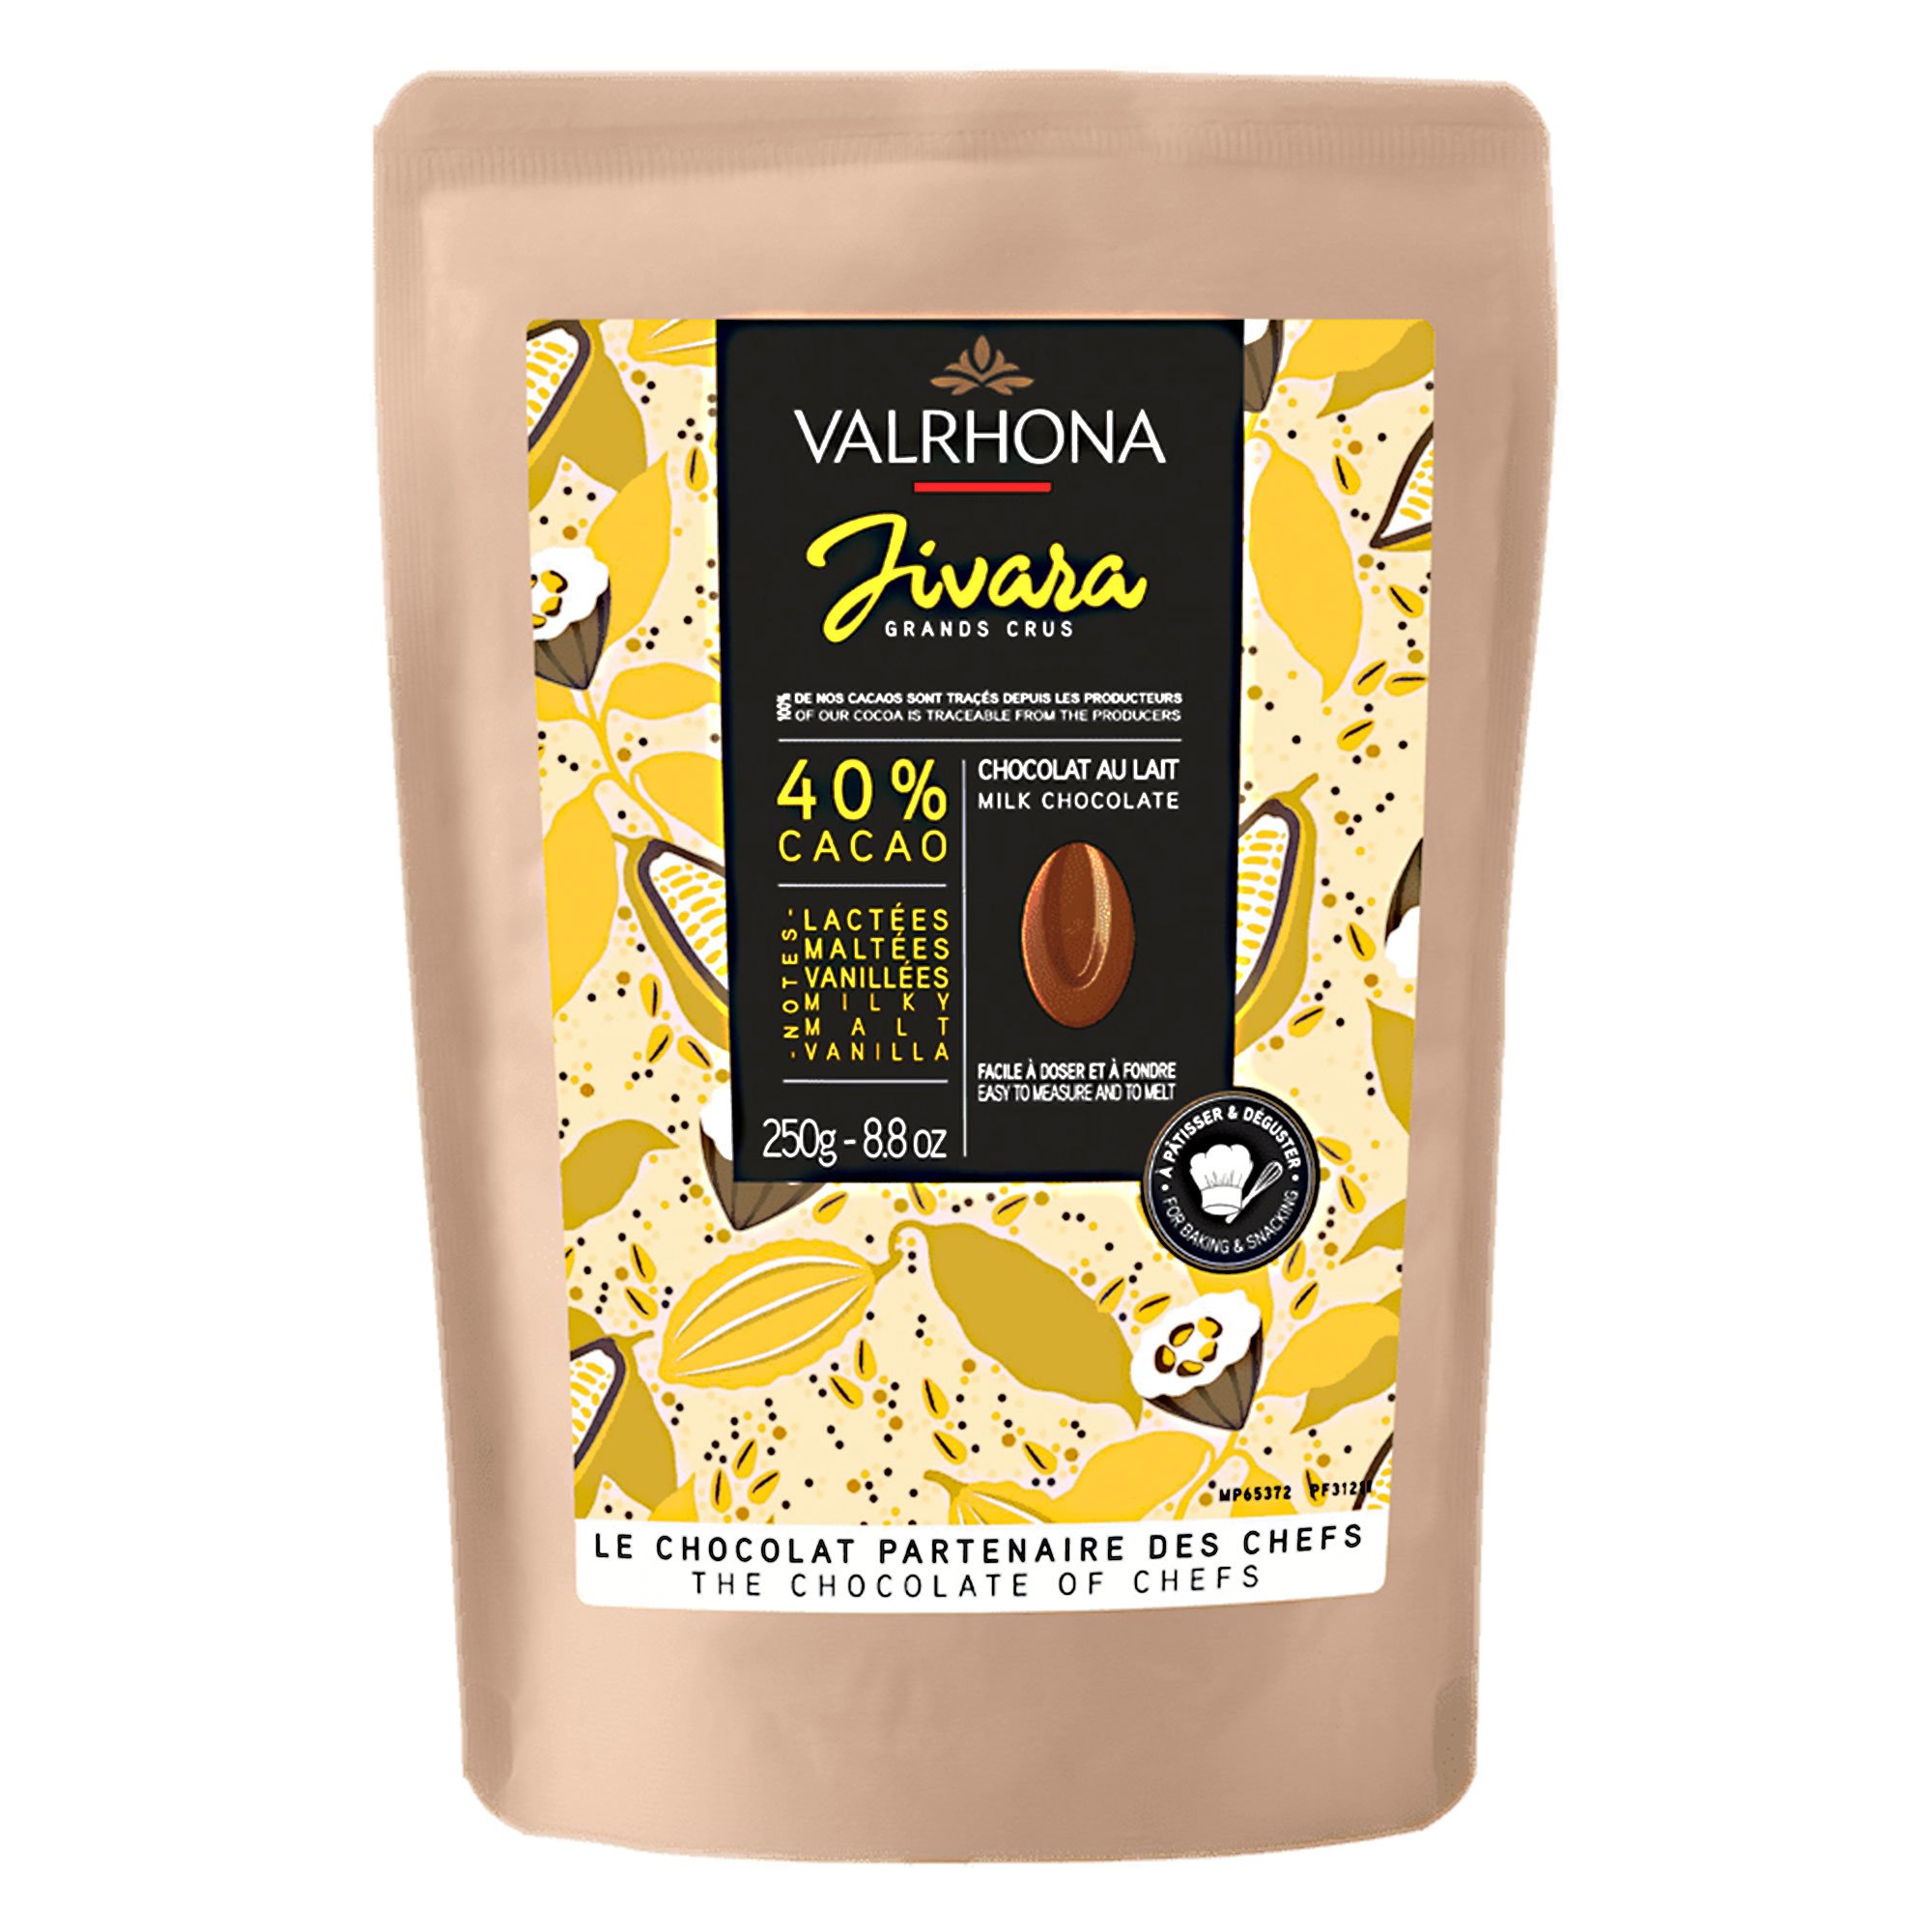 Valrhona Jivara 40% choklad, 250 g